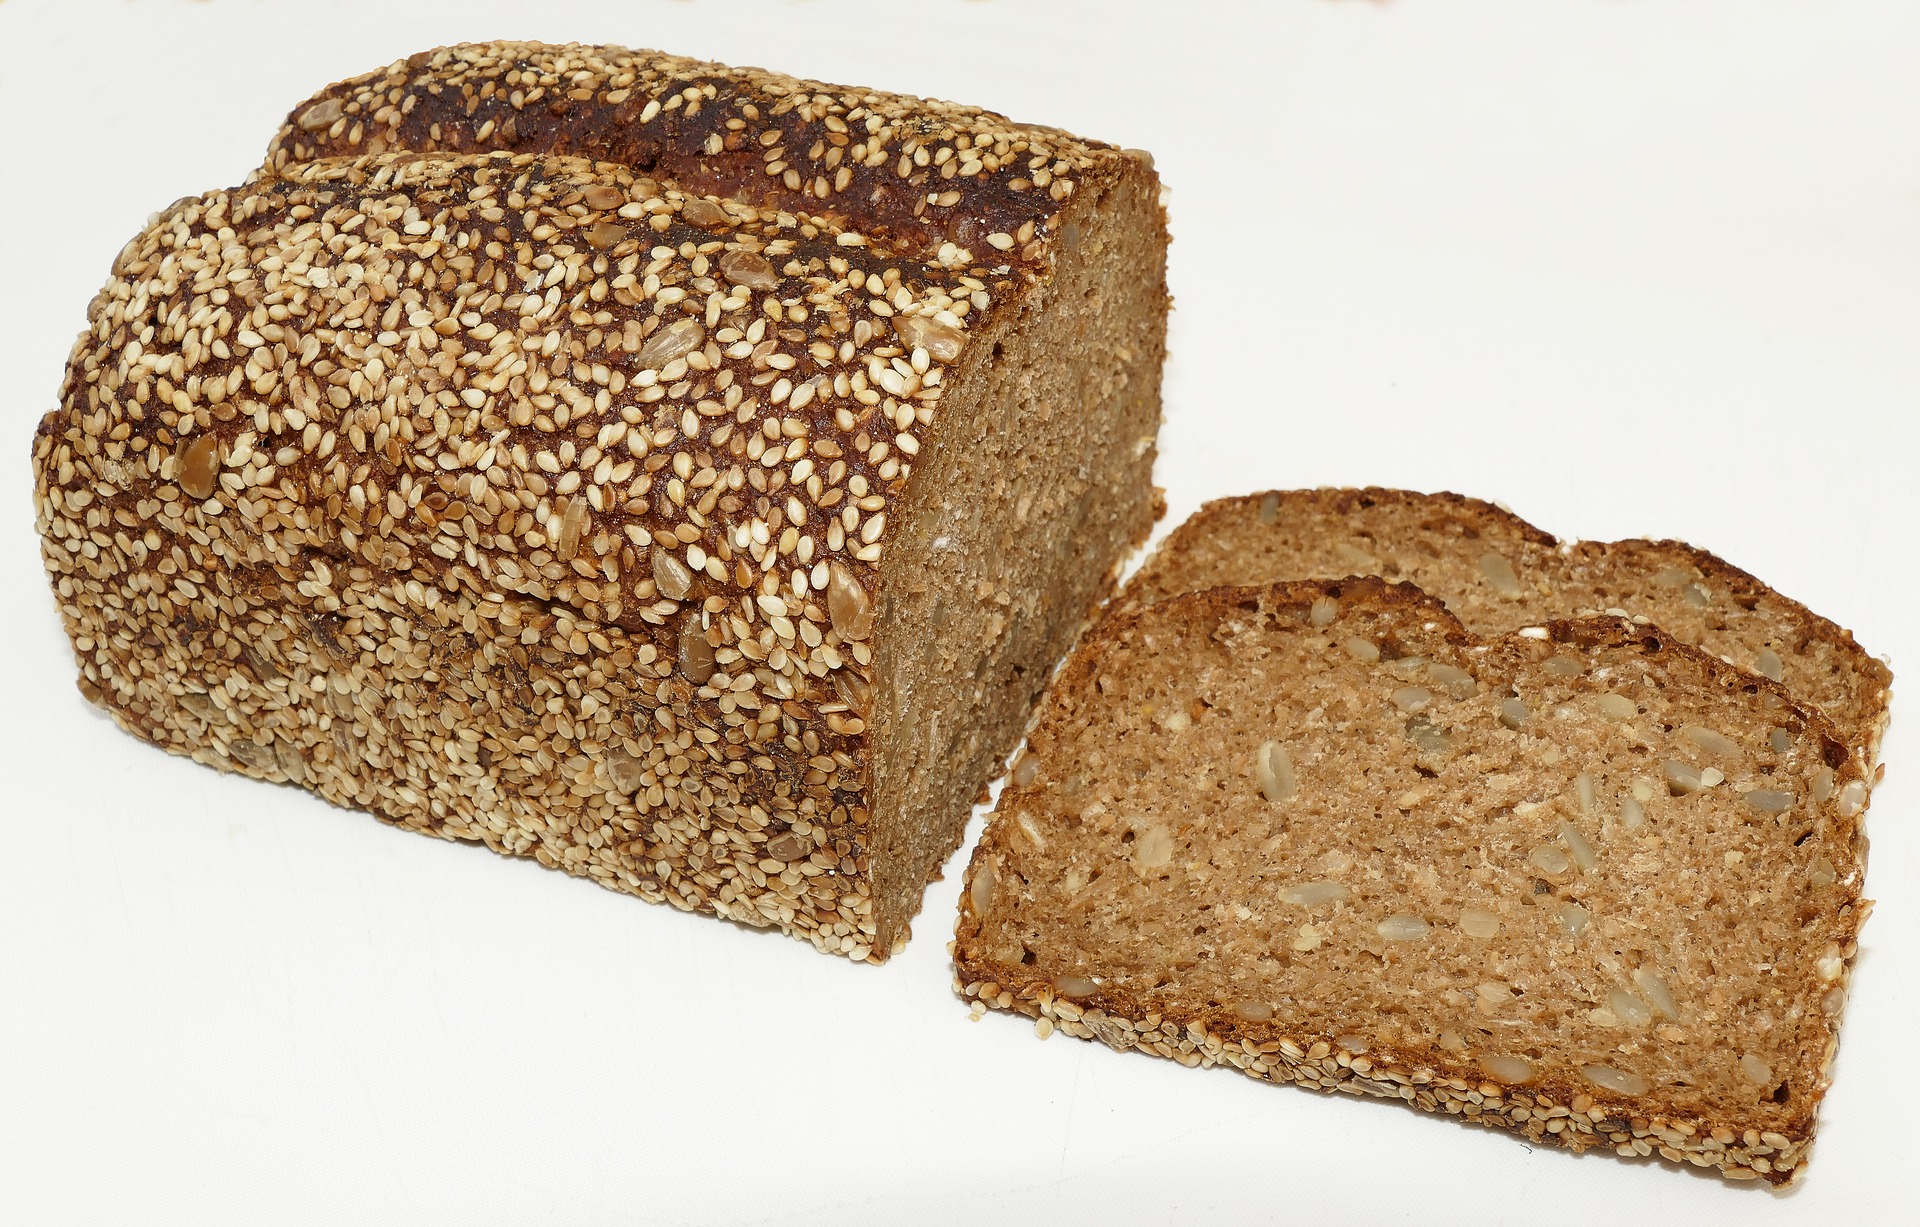 Plátek celozrnného žitného chleba patří ke každé slané snídani / foto: pixabay.com